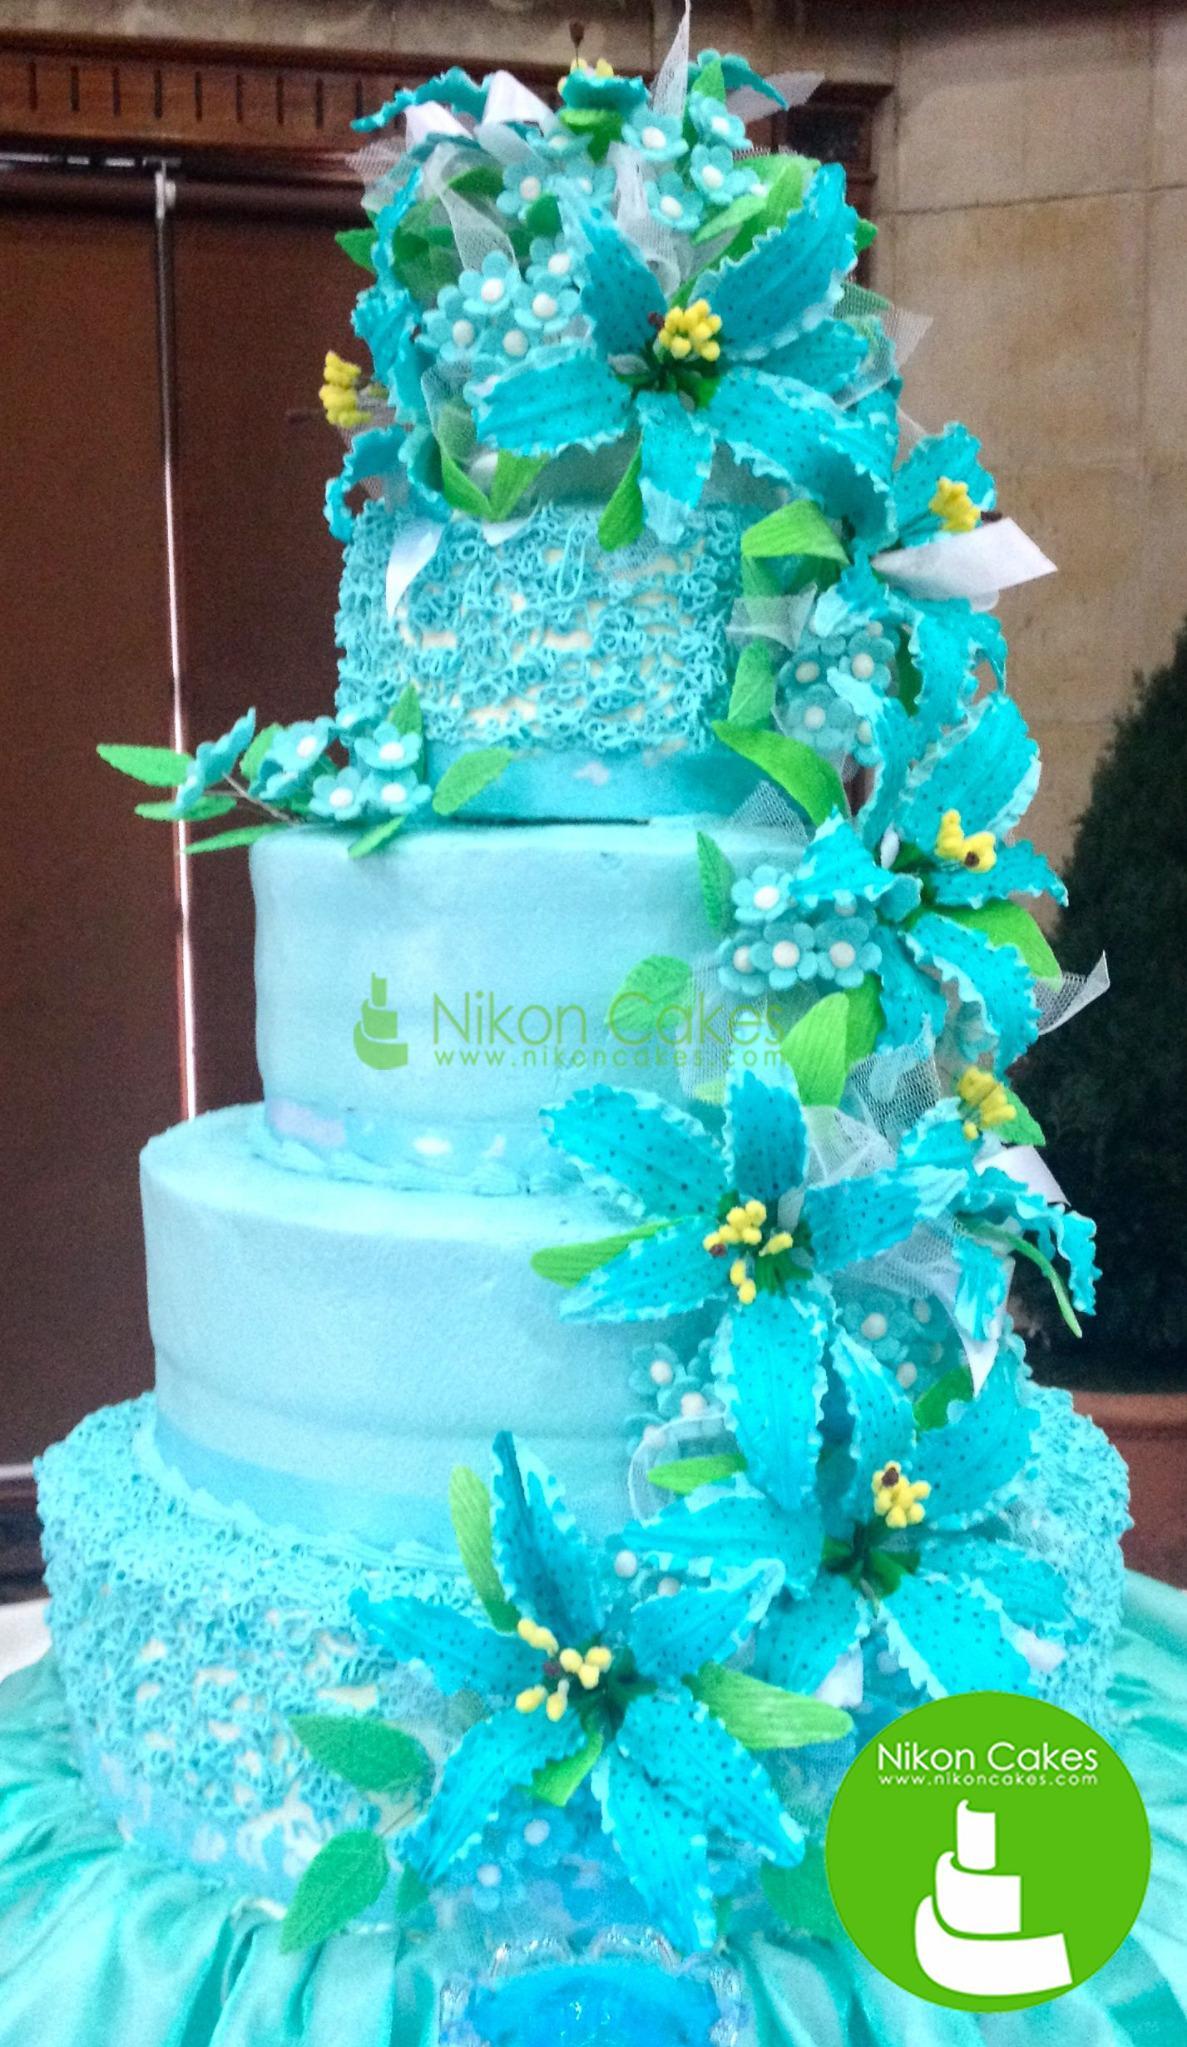 Nikon Cakes On Lovely Tiffany Blue Wedding Cake It Is